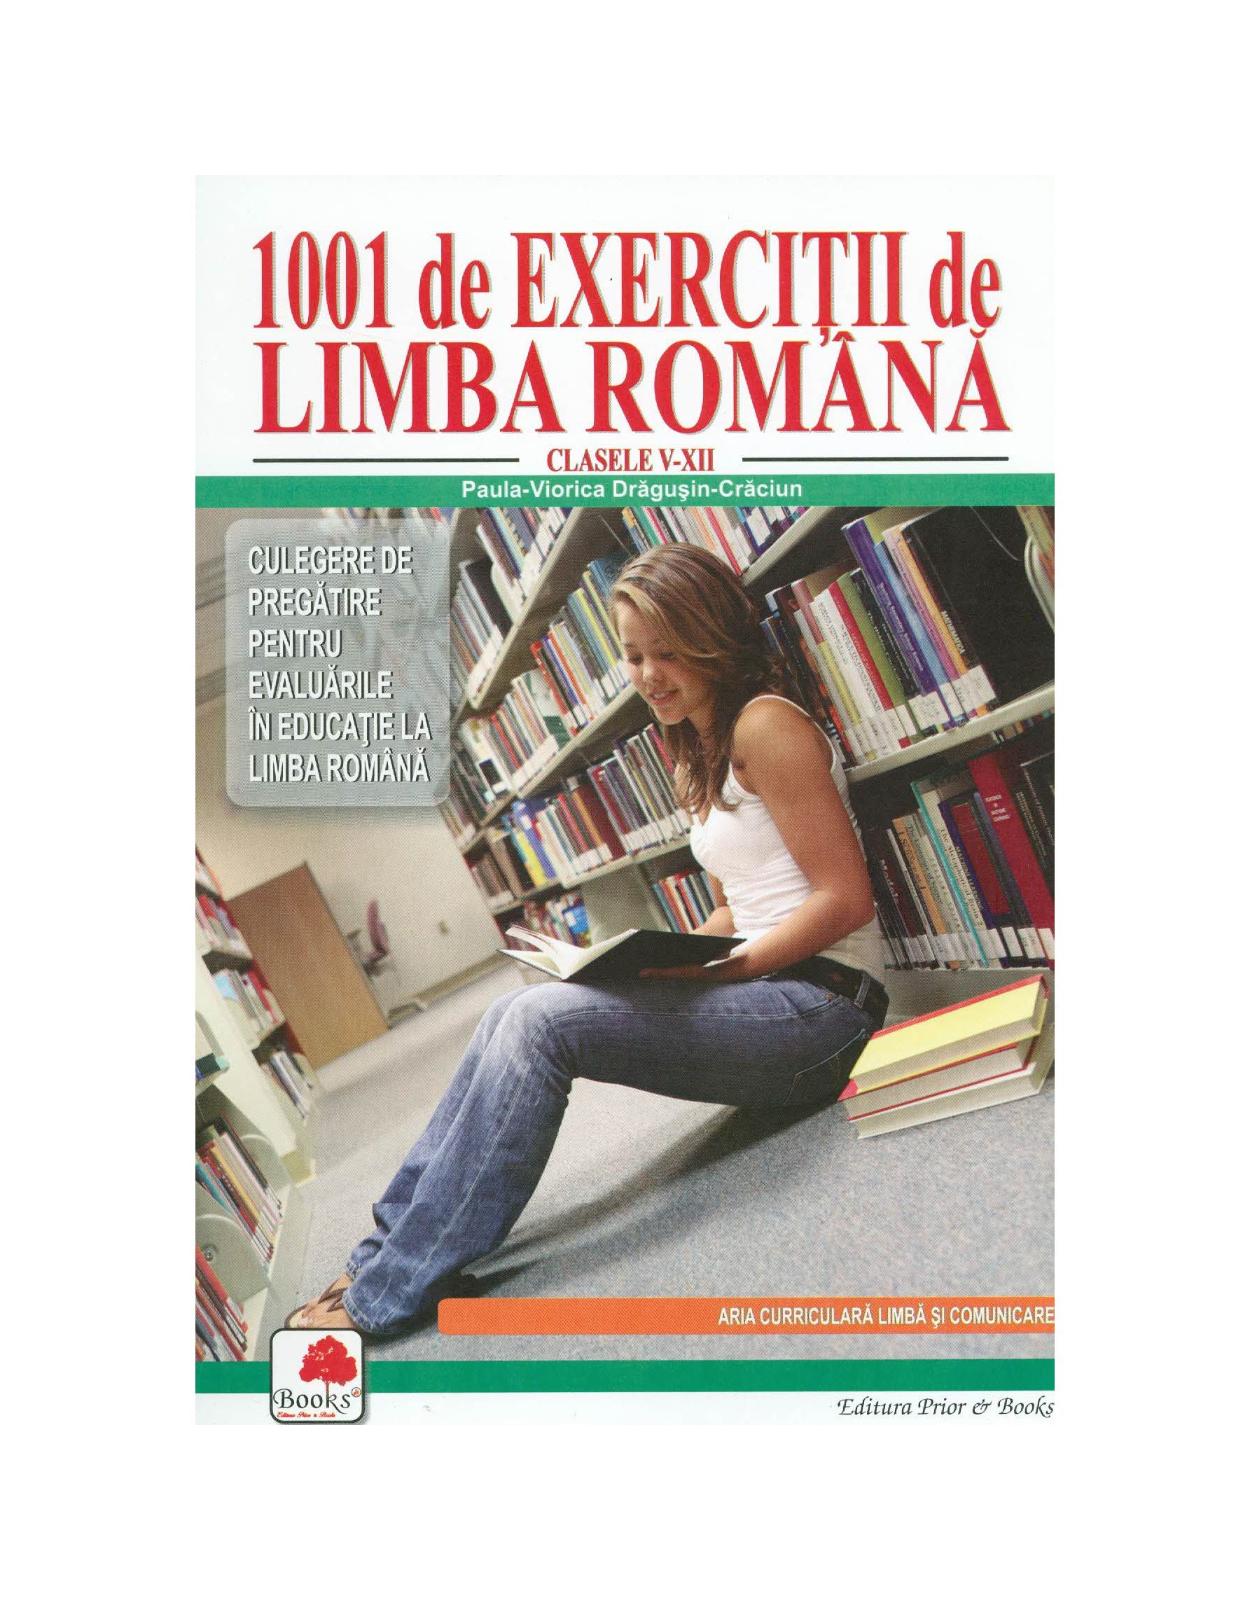 1001 exercitii de limba romana